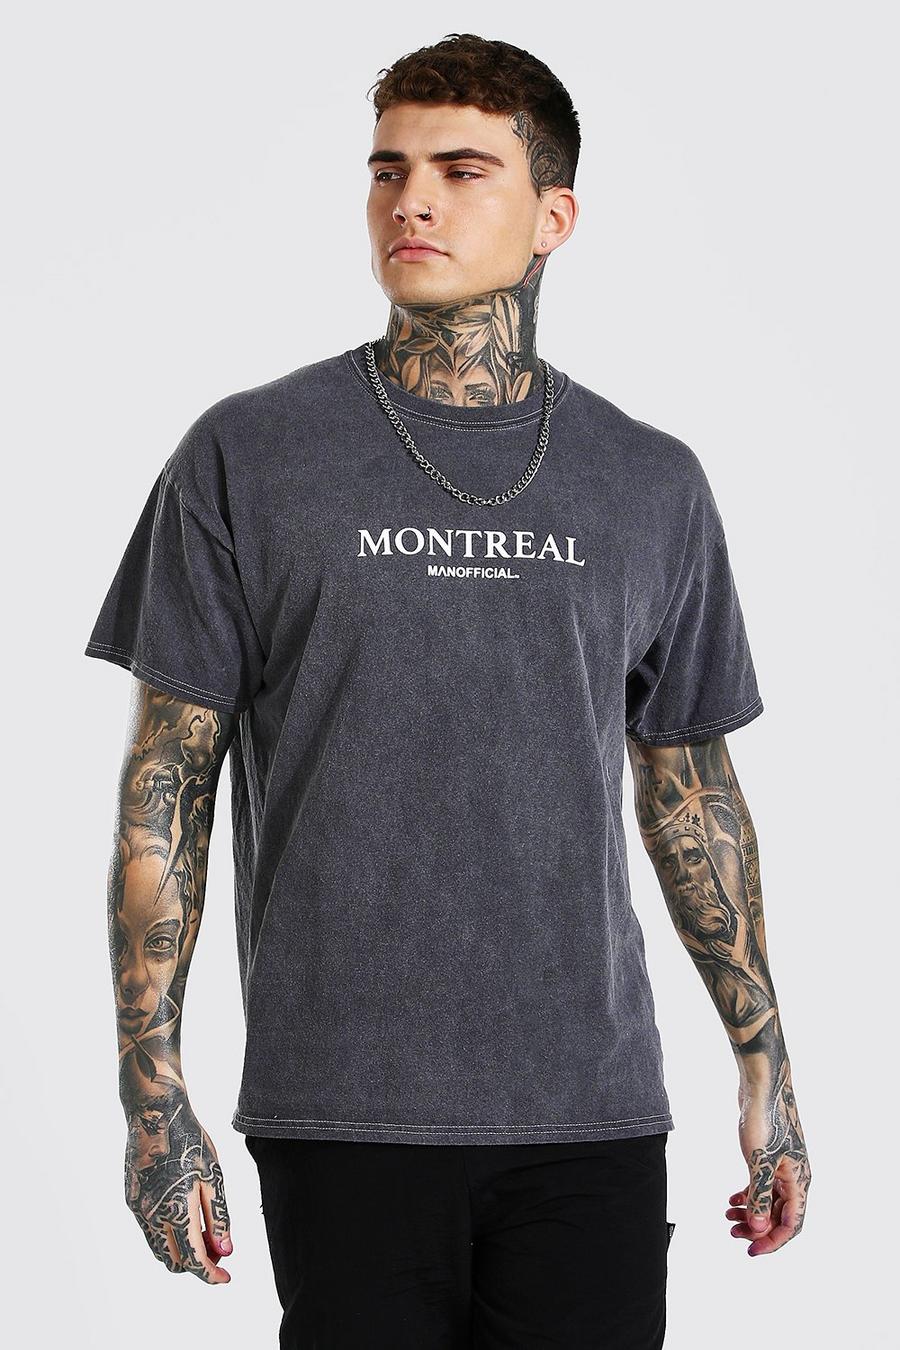 T-Shirt in Übergröße mit Montreal-Print und Überfärbung, Anthrazit grau image number 1